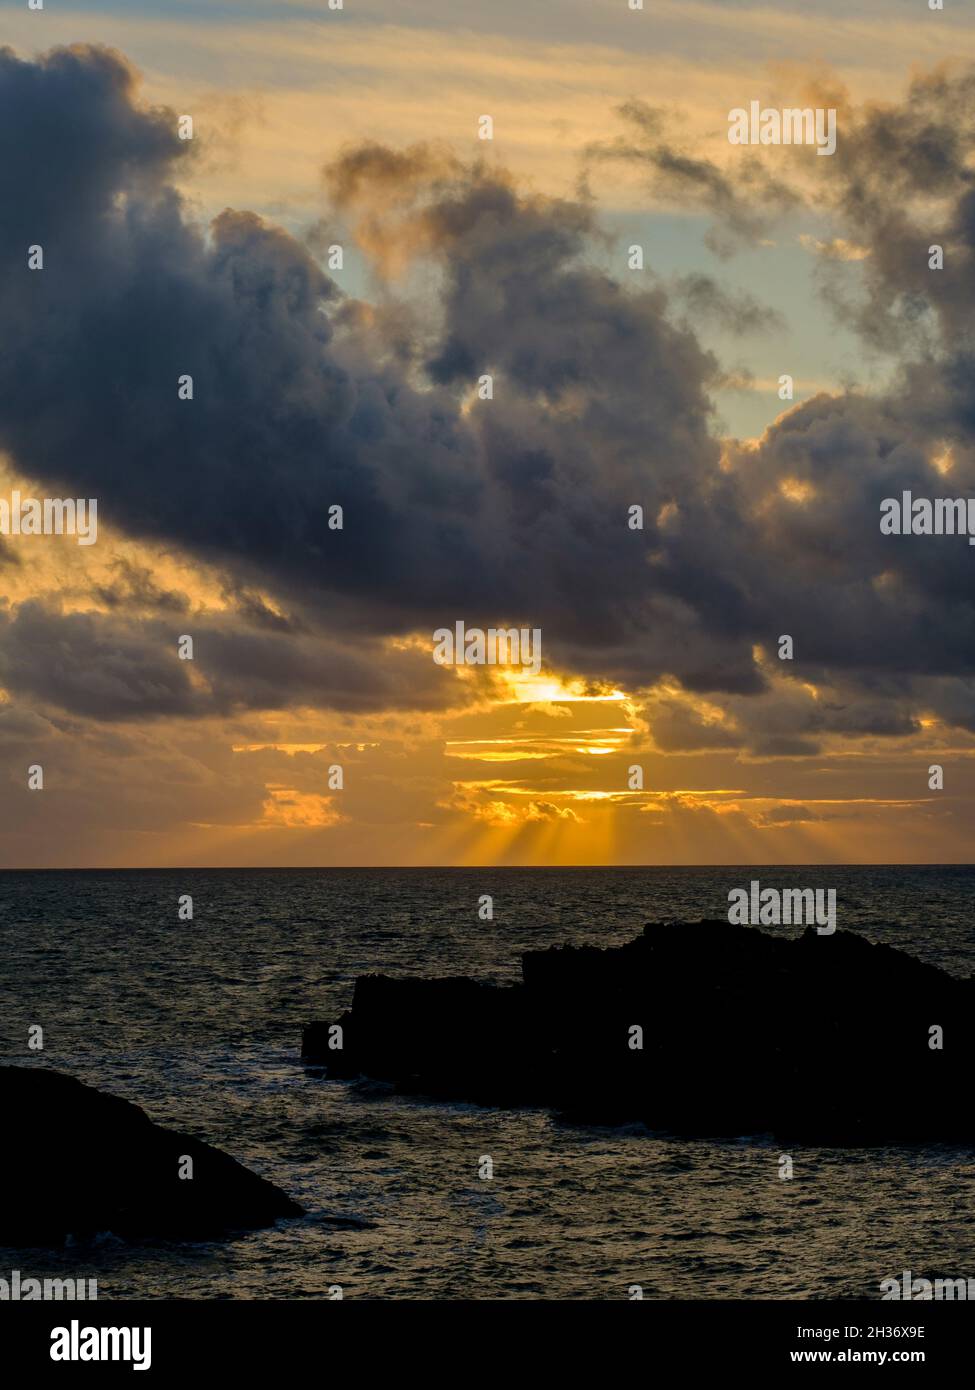 Un coucher de soleil spectaculaire au large de la côte sur Ynys Llandwyn à Anglesey, au nord du pays de Galles, au Royaume-Uni Banque D'Images